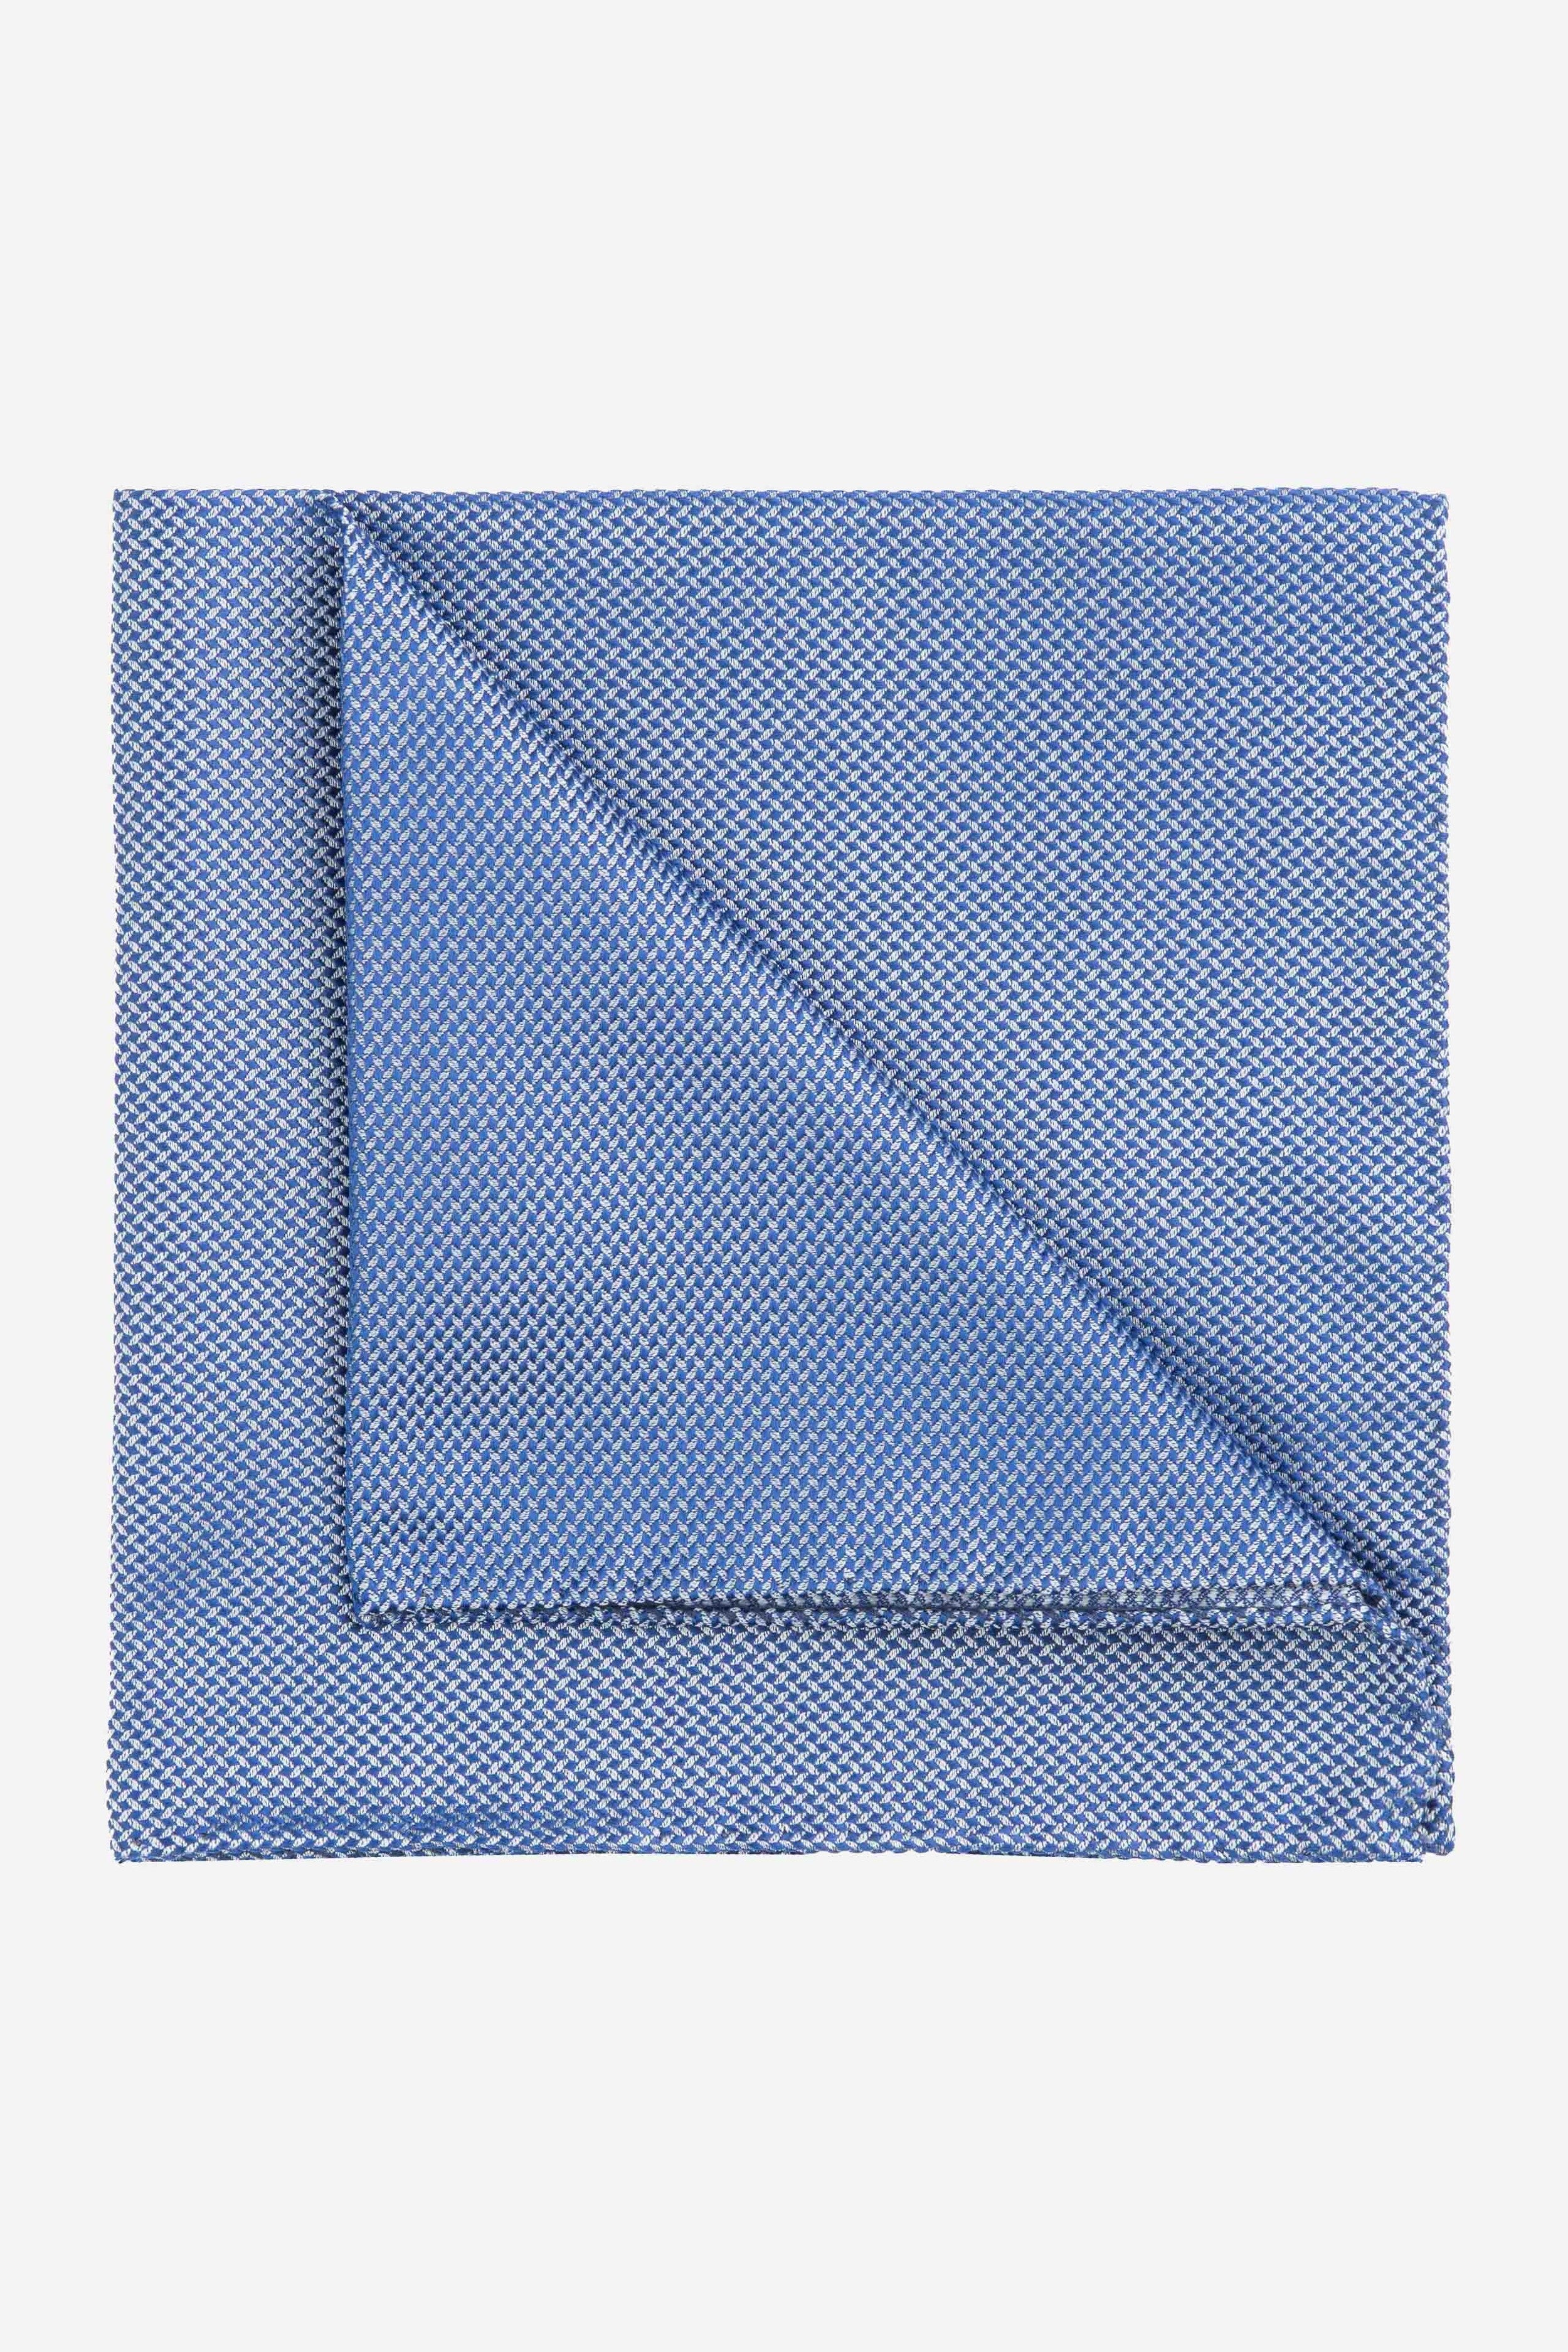 Blue patterned pocket-square - Royal blue